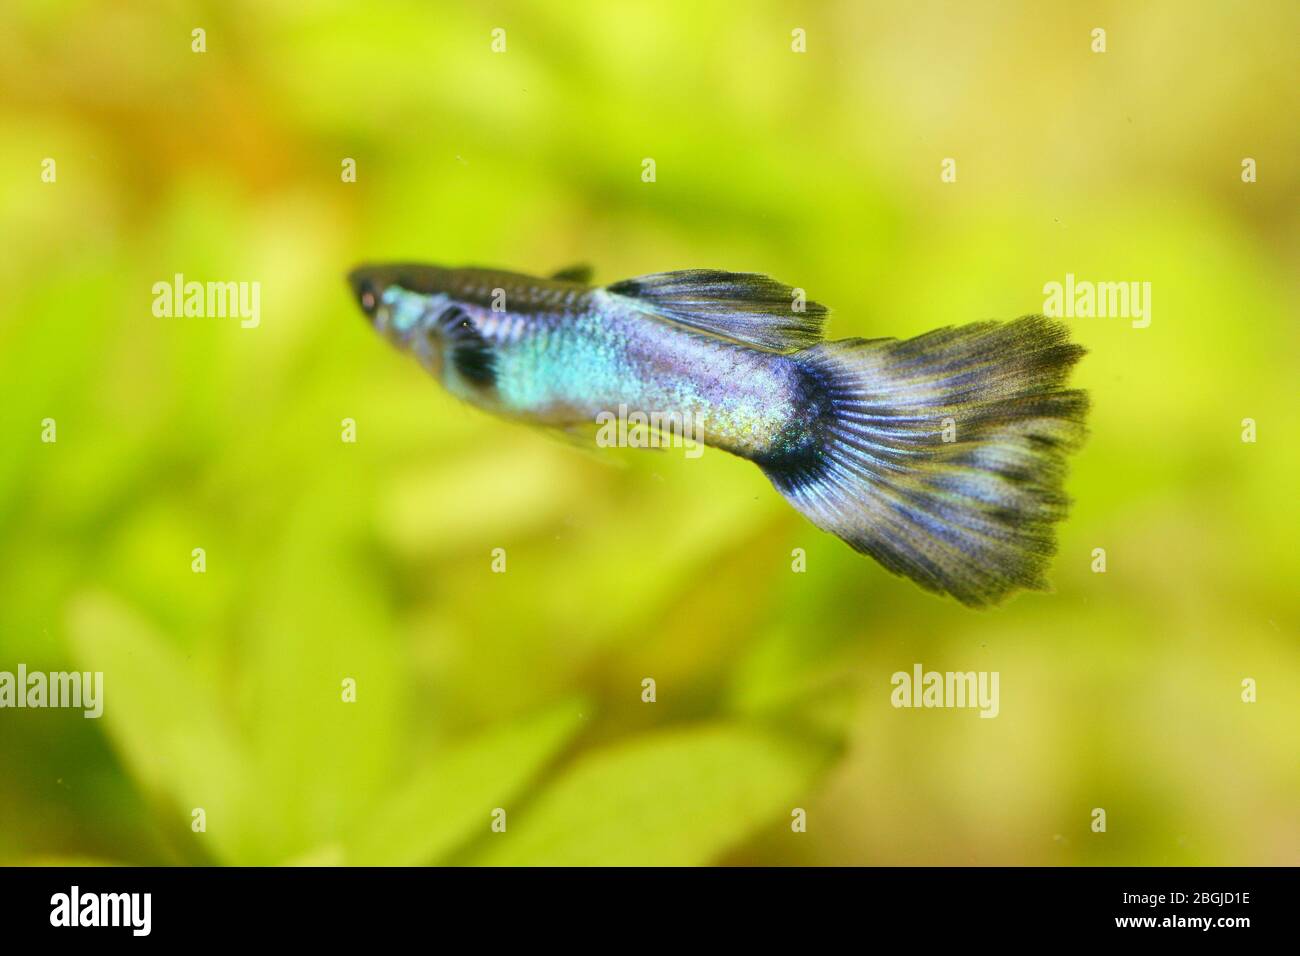 Un maschio guppy (Poecilia reticulata), un popolare acquario di acqua dolce pesce Ein männlicher Guppy, (Poecilia reticulata) ein beliebter Süßwasser-Aquarienfis Foto Stock